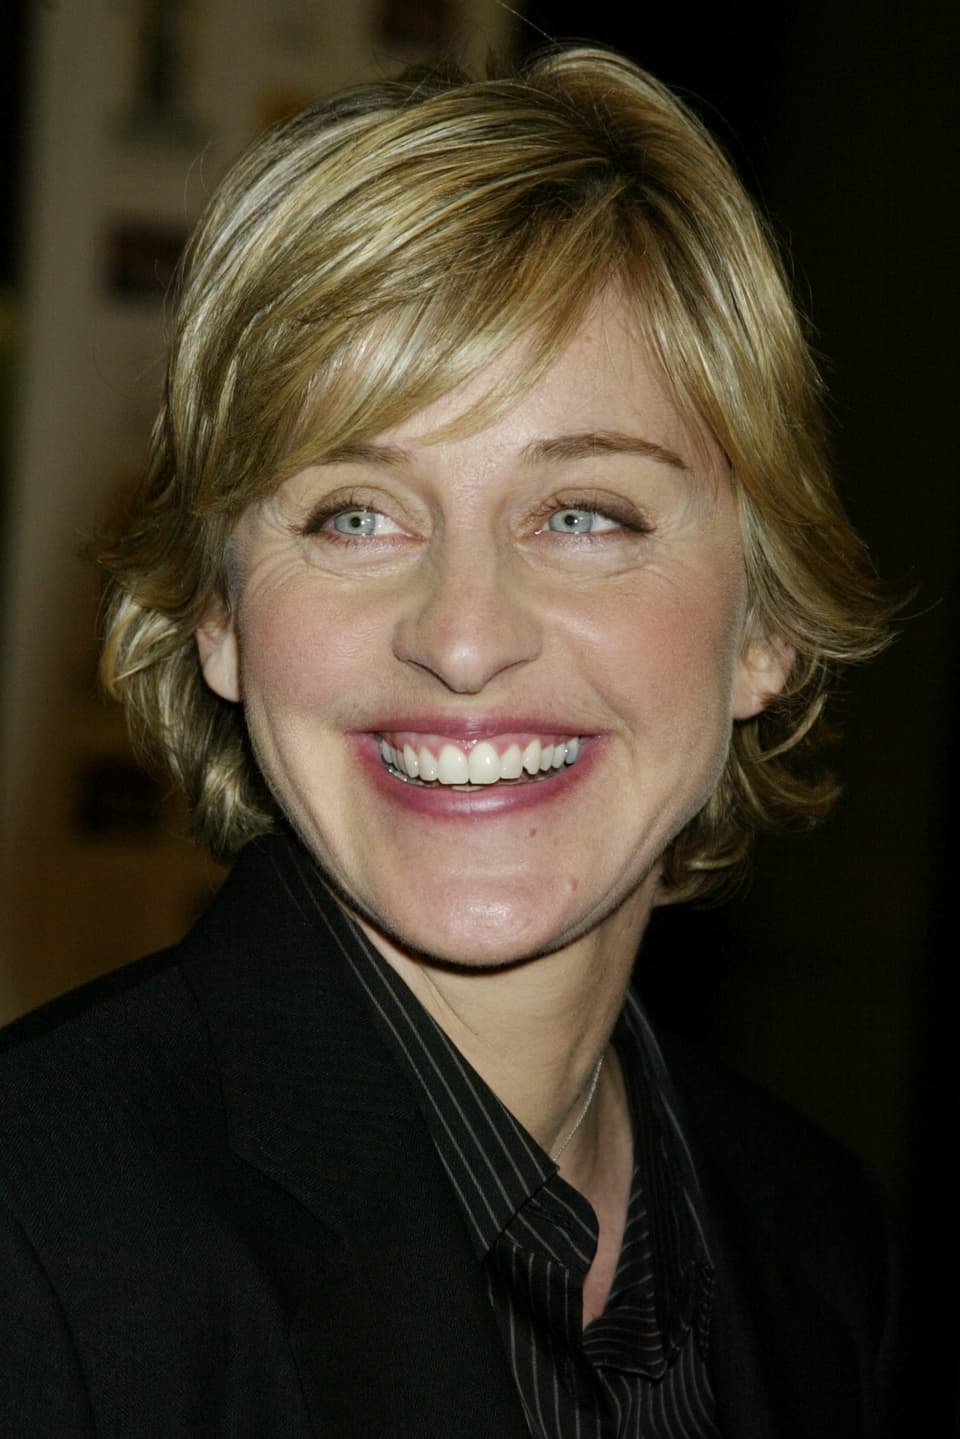 Nach dem Karrieren-Tief aufgrund ihres Outings als homosexuell startet Ellen DeGeneres 2003 mit ihrer eigenen Show durch.